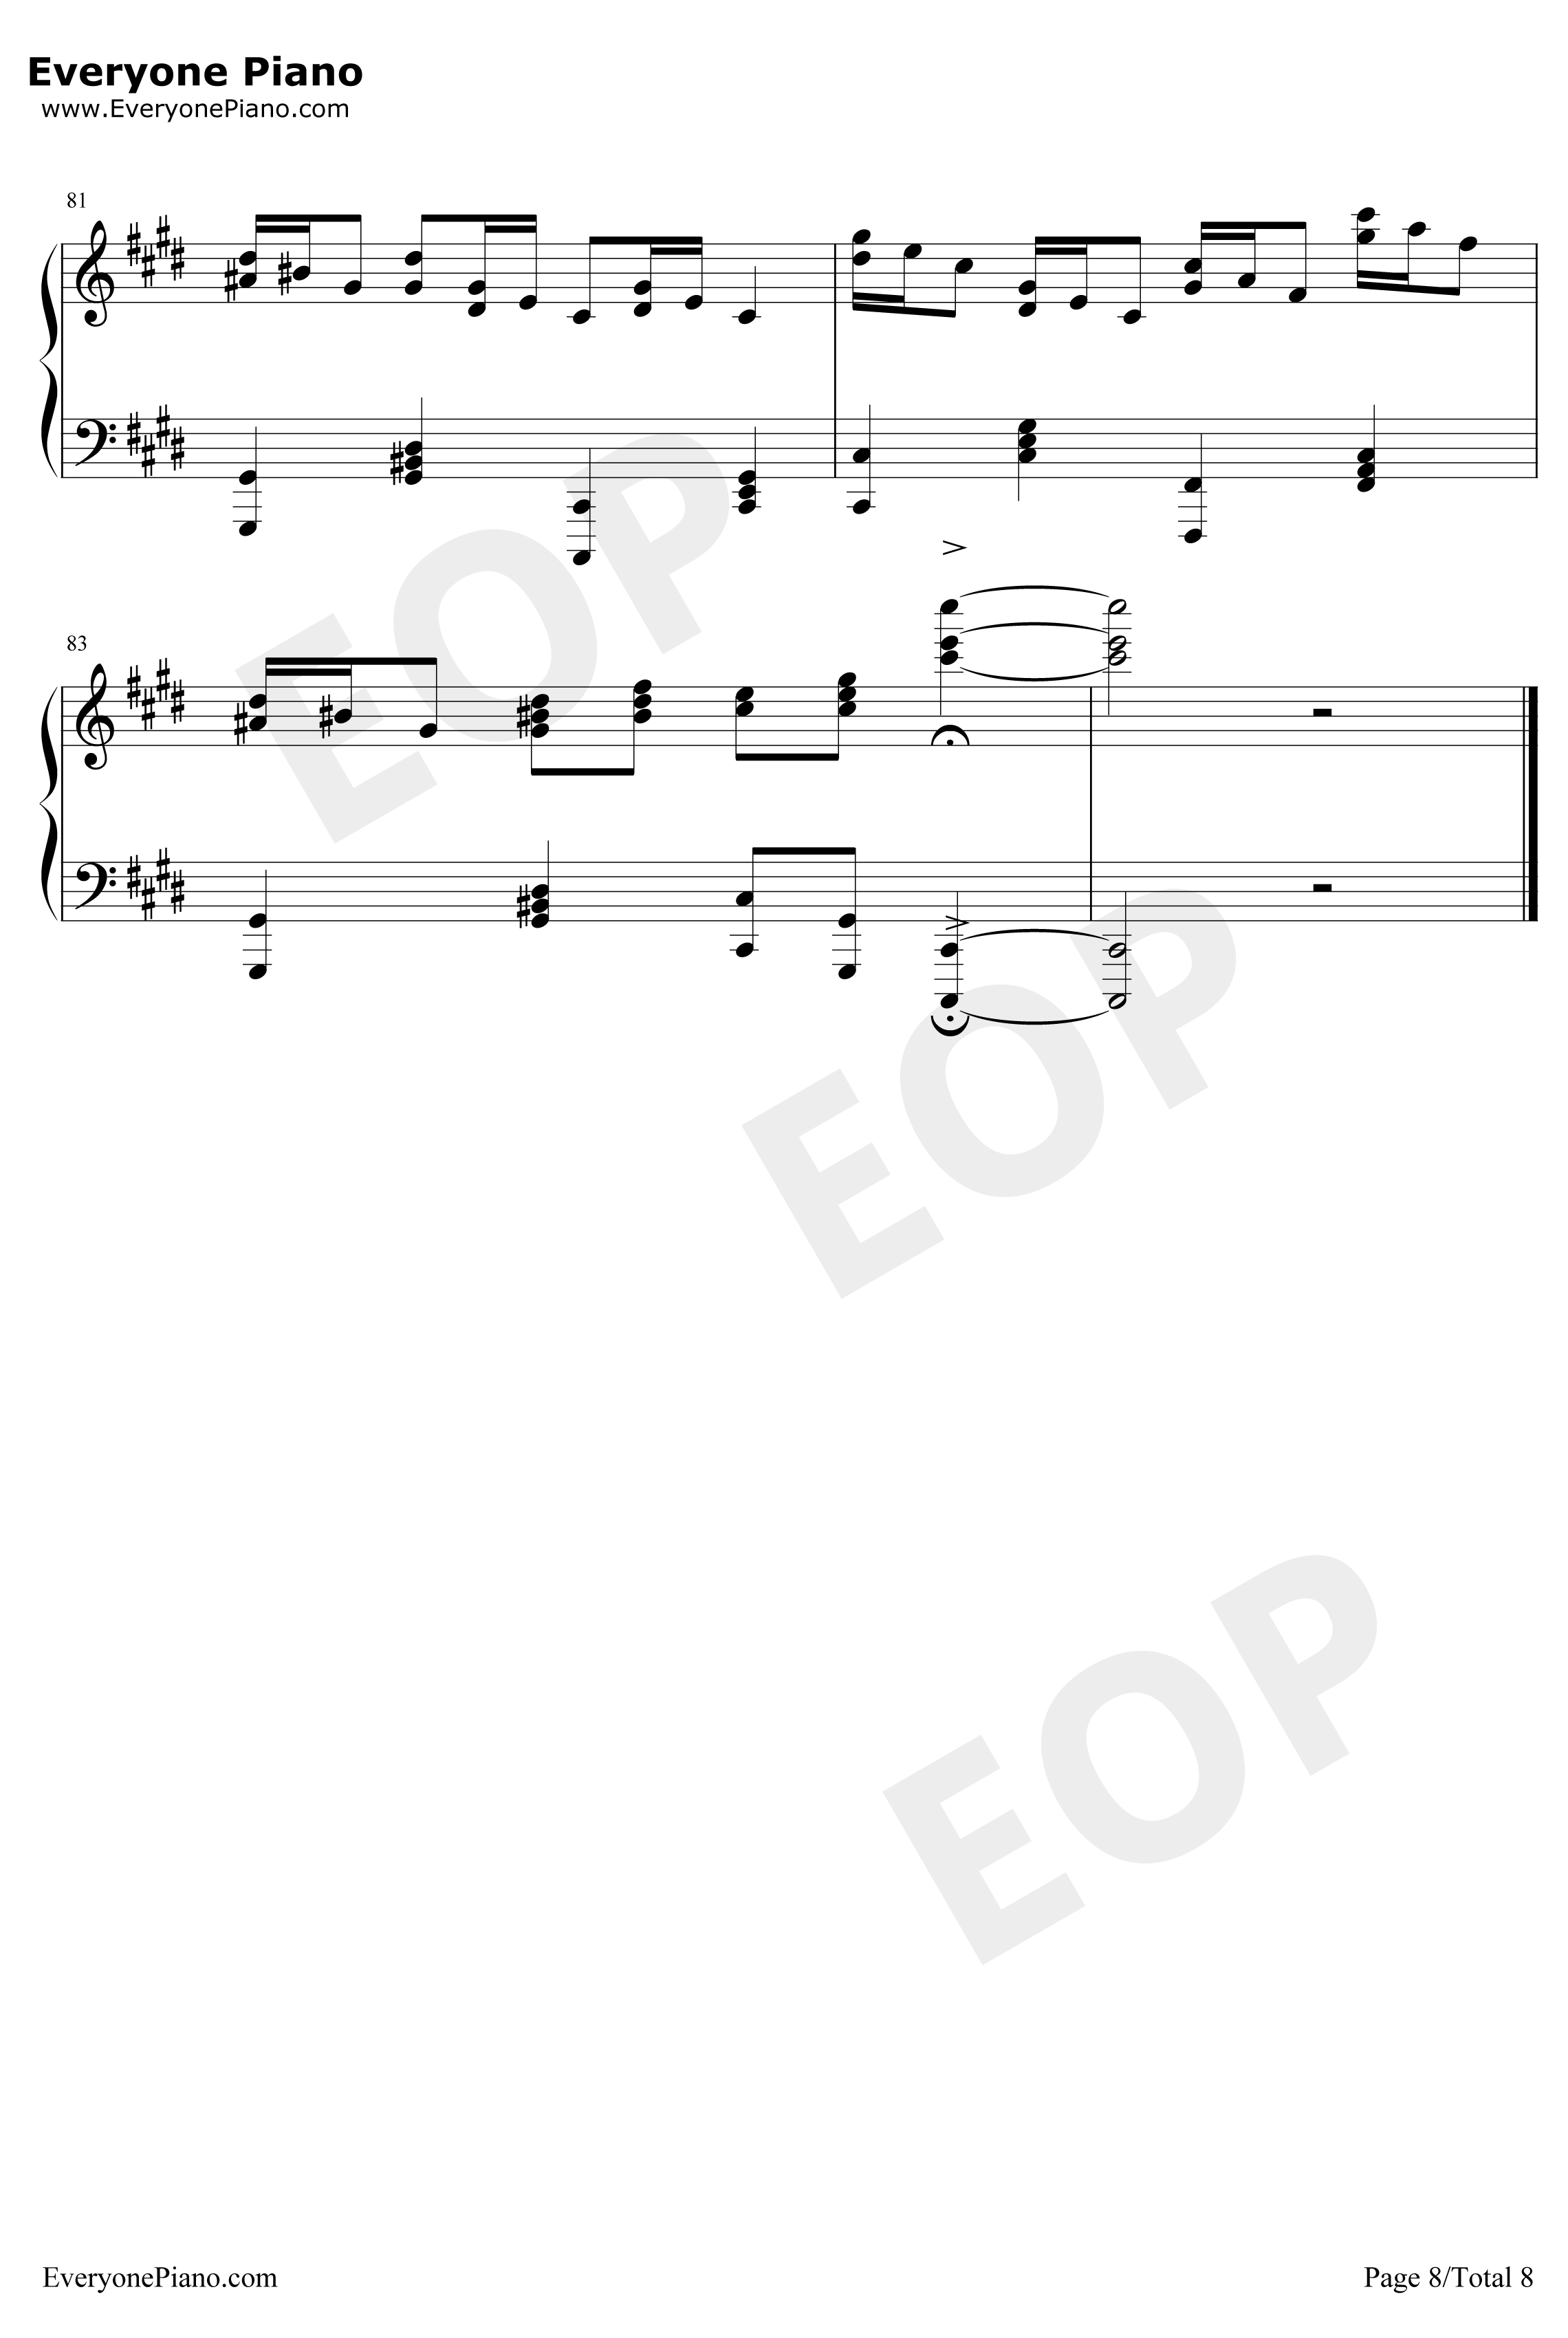 克罗地亚狂想曲钢琴谱-完美版-马克西姆8